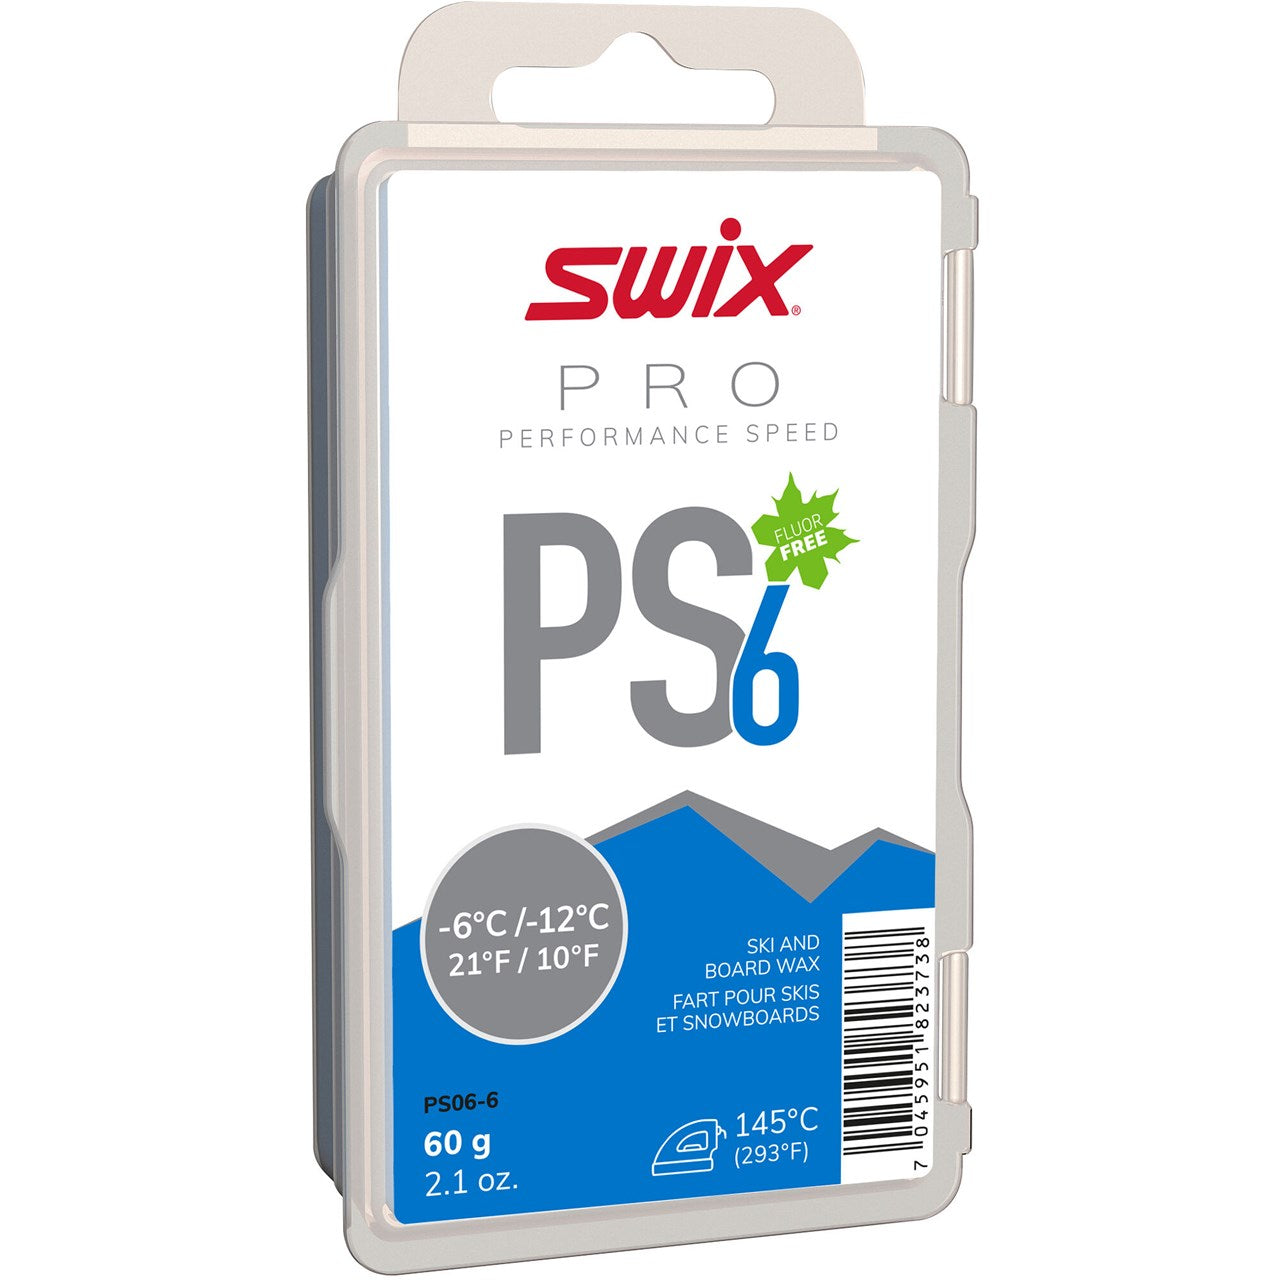 Swix PS6 Blue 60g - Performance Speed SKI & SNOWBOARD WAX Swix   